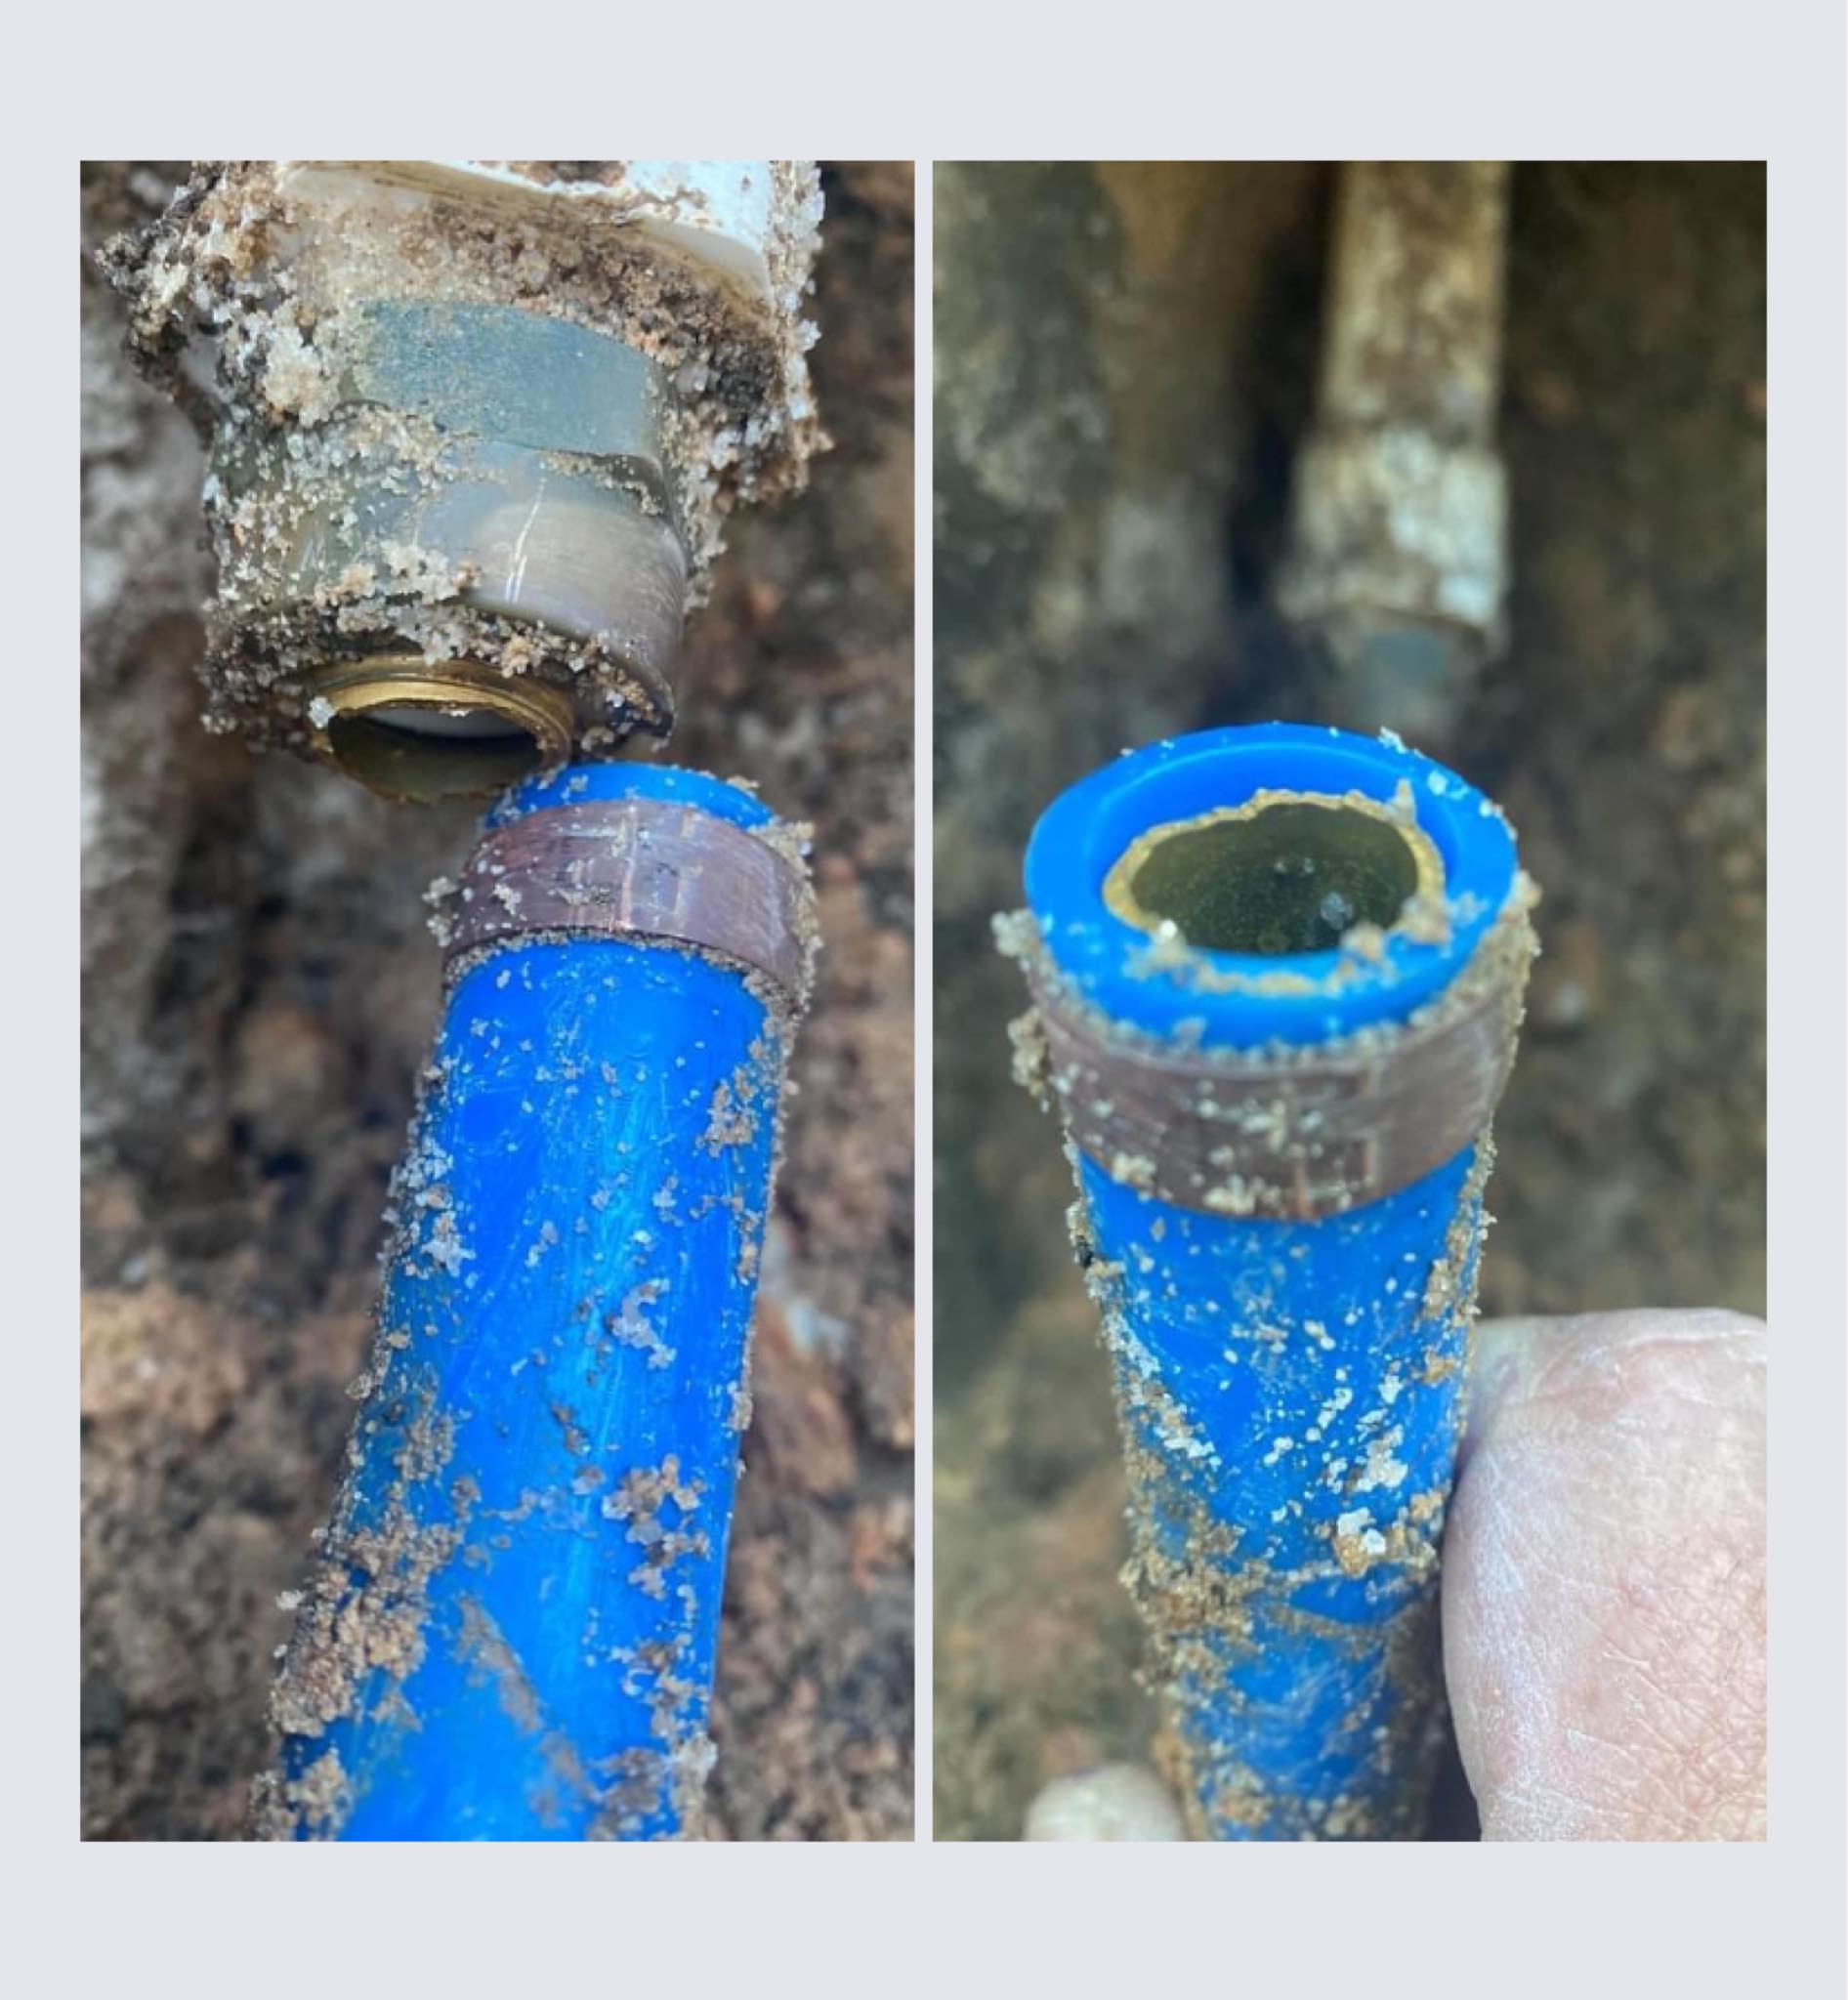 DC Sewer and Drain Residential Water Main Repair